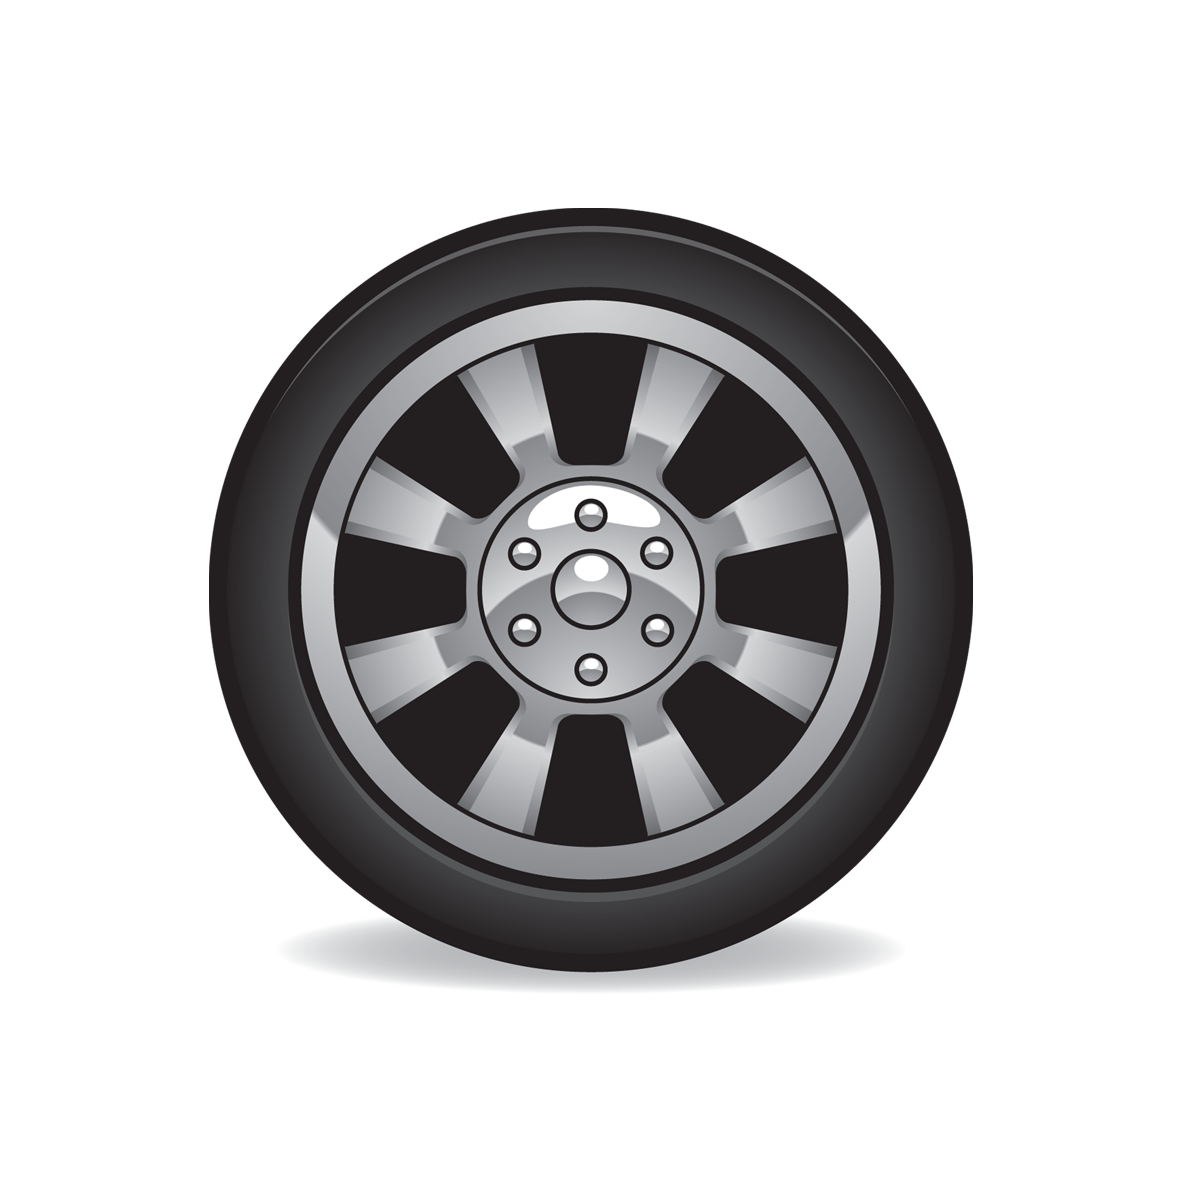 Alloy wheel,Rim,Spoke,Wheel,Tire,Auto part,Automotive wheel system,Automotive tire,Vehicle,Hubcap,Car,Tire care